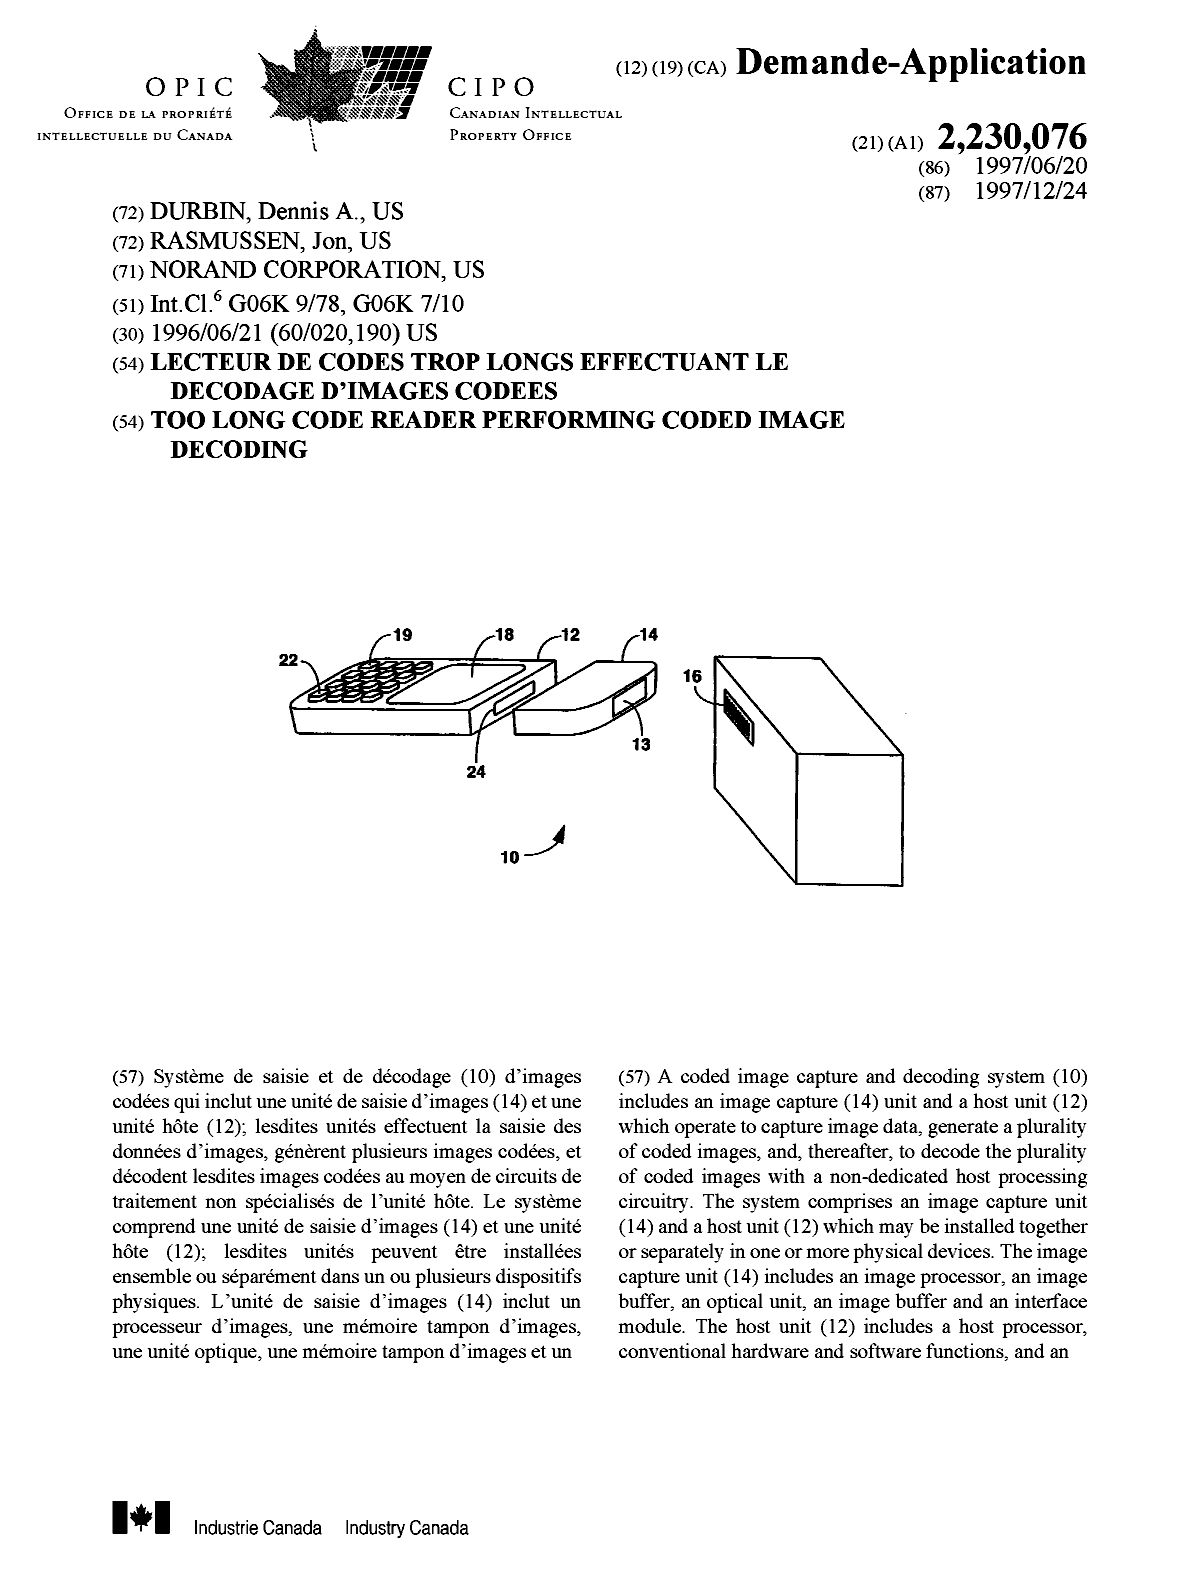 Document de brevet canadien 2230076. Page couverture 19980602. Image 1 de 2